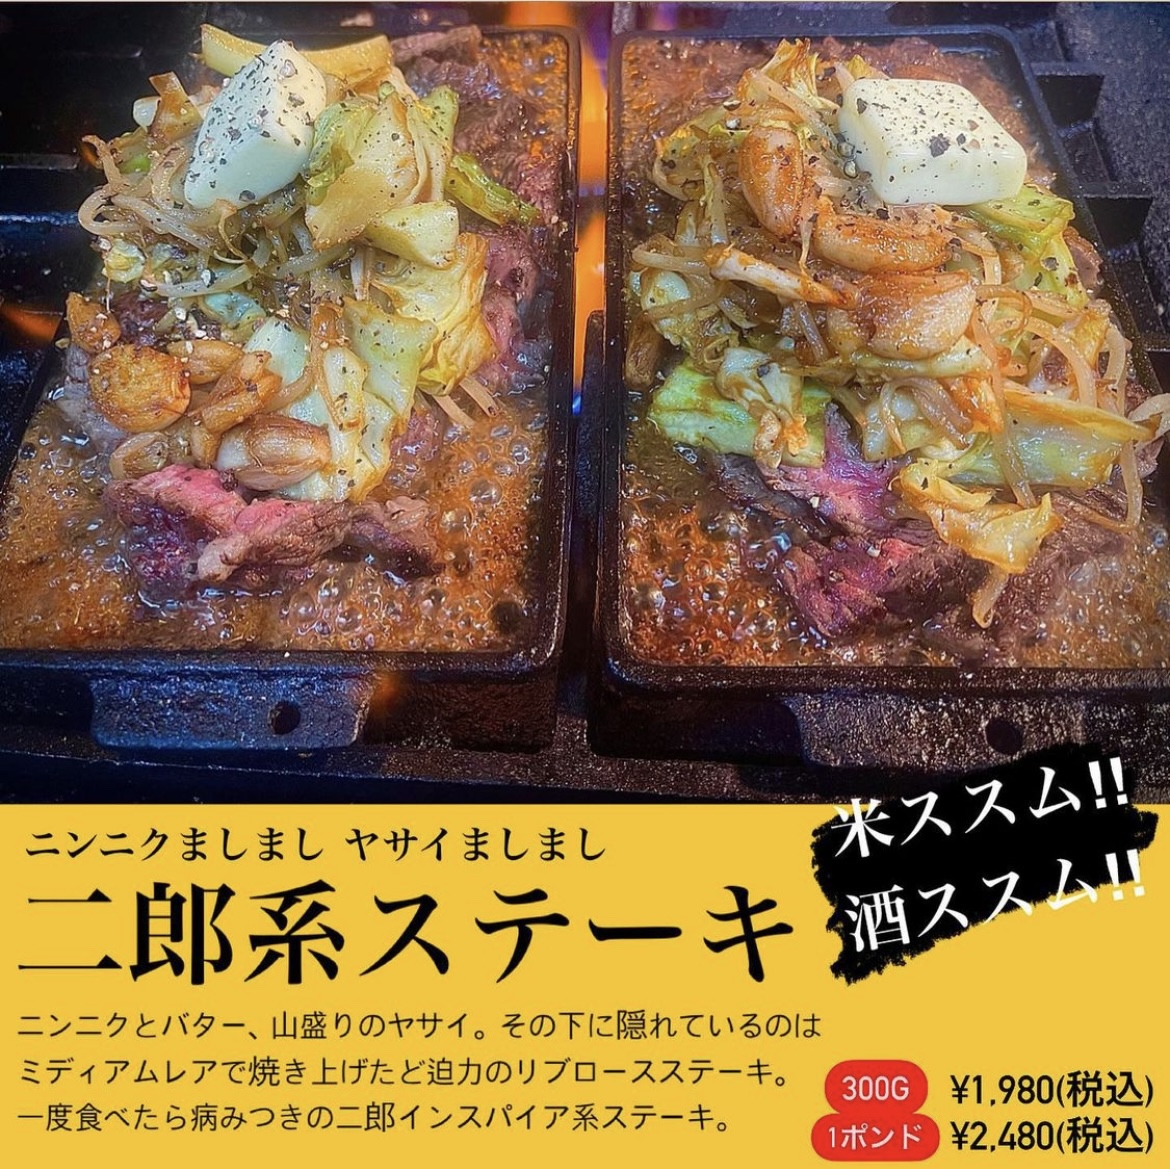 【白子店限定】二郎インスパイア系ステーキ